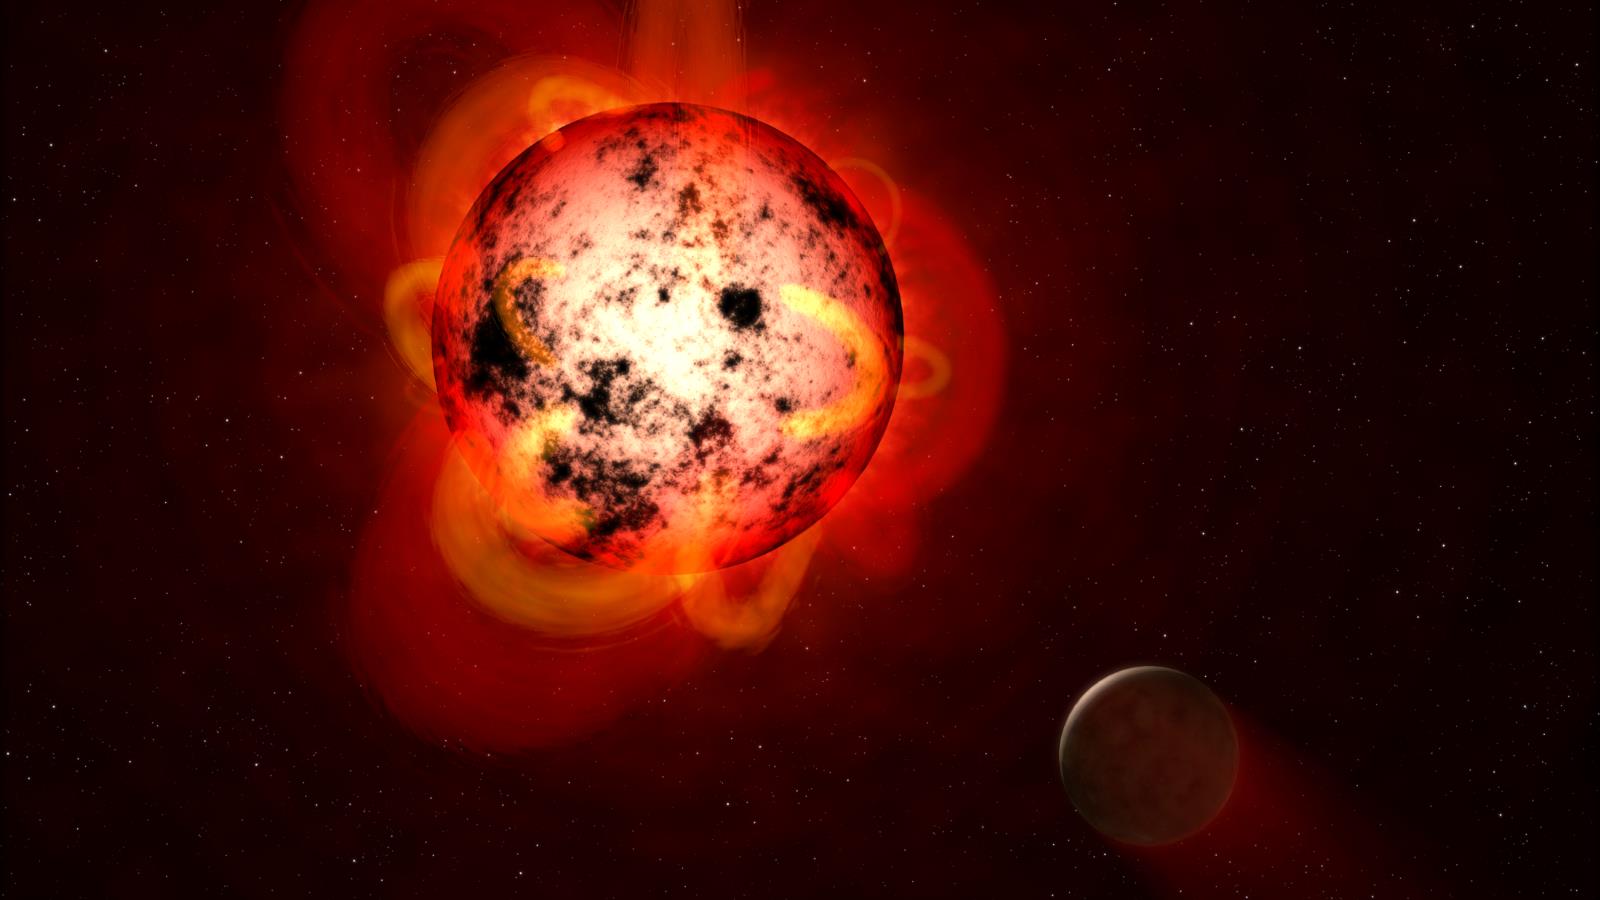 ‪الأقزام الحمراء أصغر في الحجم من الشمس بحيث سيبدو أحدها بحجم كرة تنس أرضي إذا كانت الشمس بحجم كرة قدم‬ (مواقع إلكترونية)